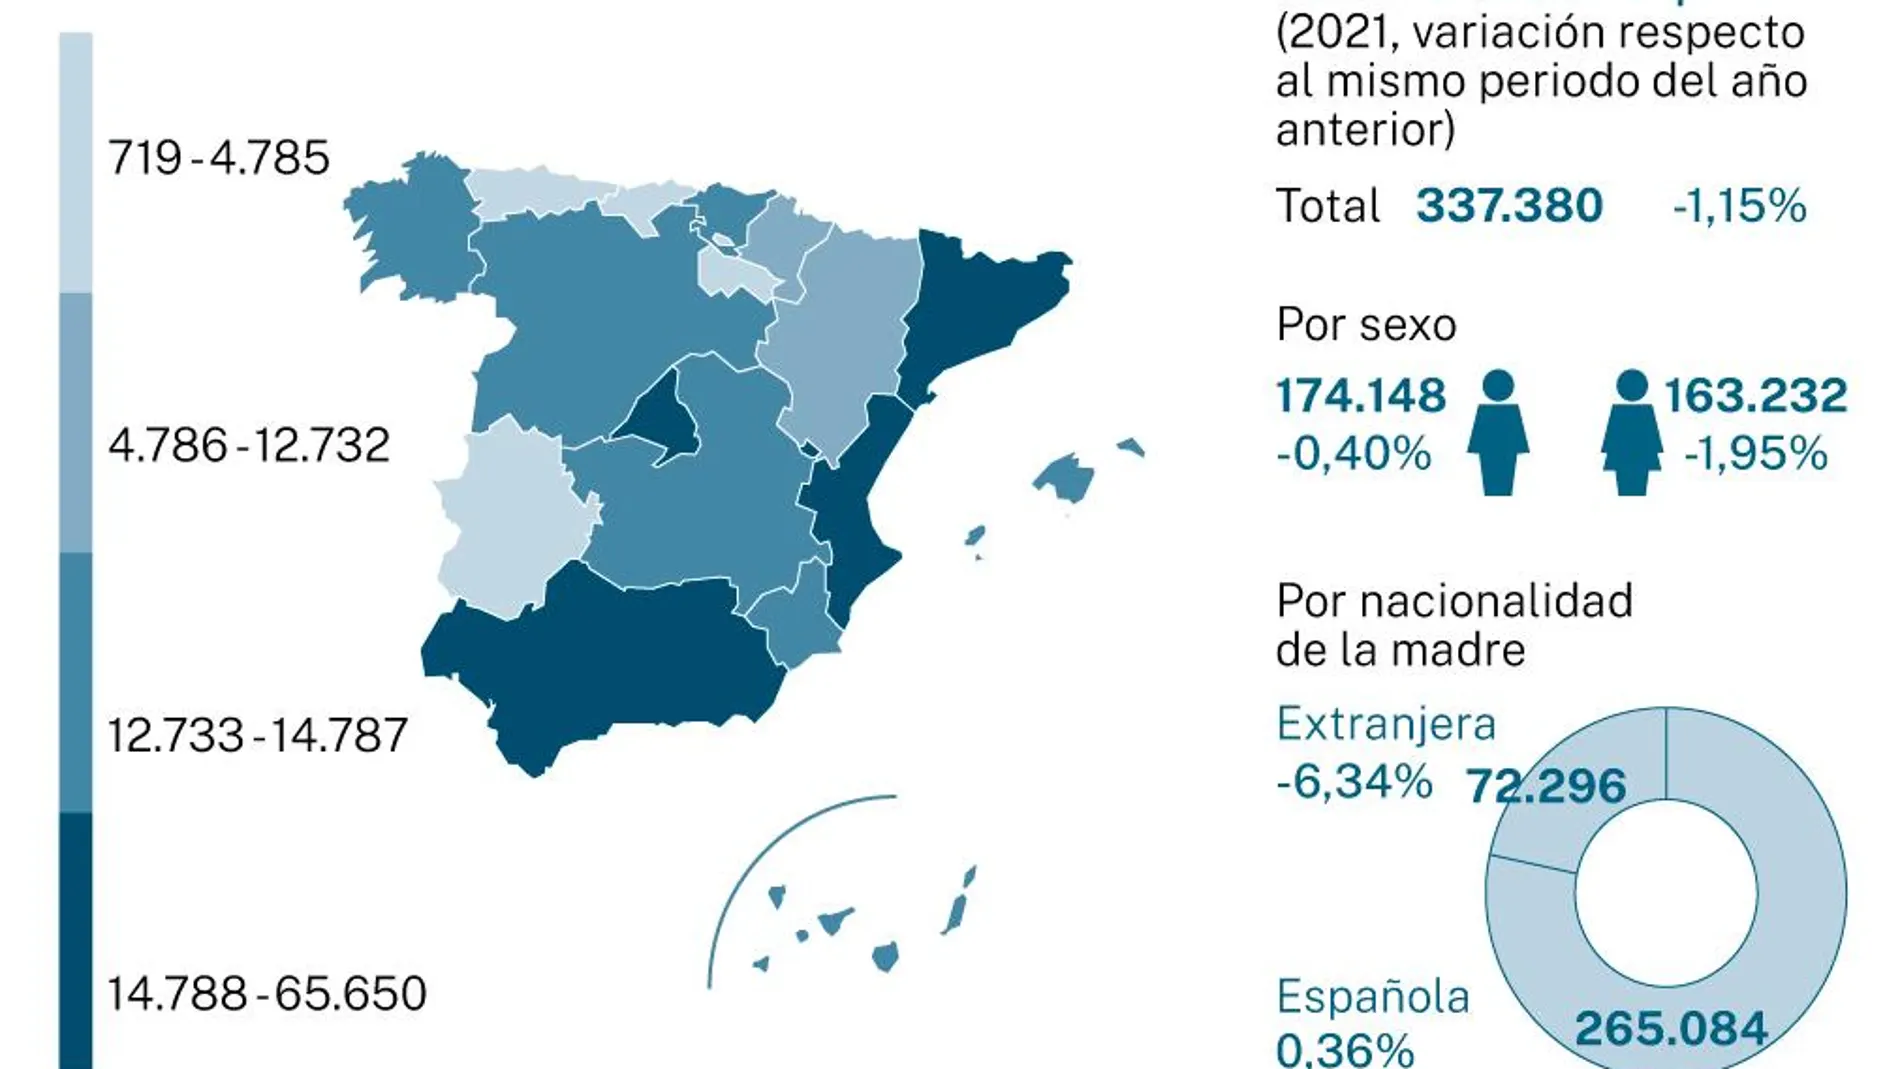 Casi uno de cada cinco nacimientos se produjo en Andalucía (19,46 %), un 17,08 % en Cataluña, un 15,22 % en Madrid y un 10,57 % en la Comunidad Valenciana